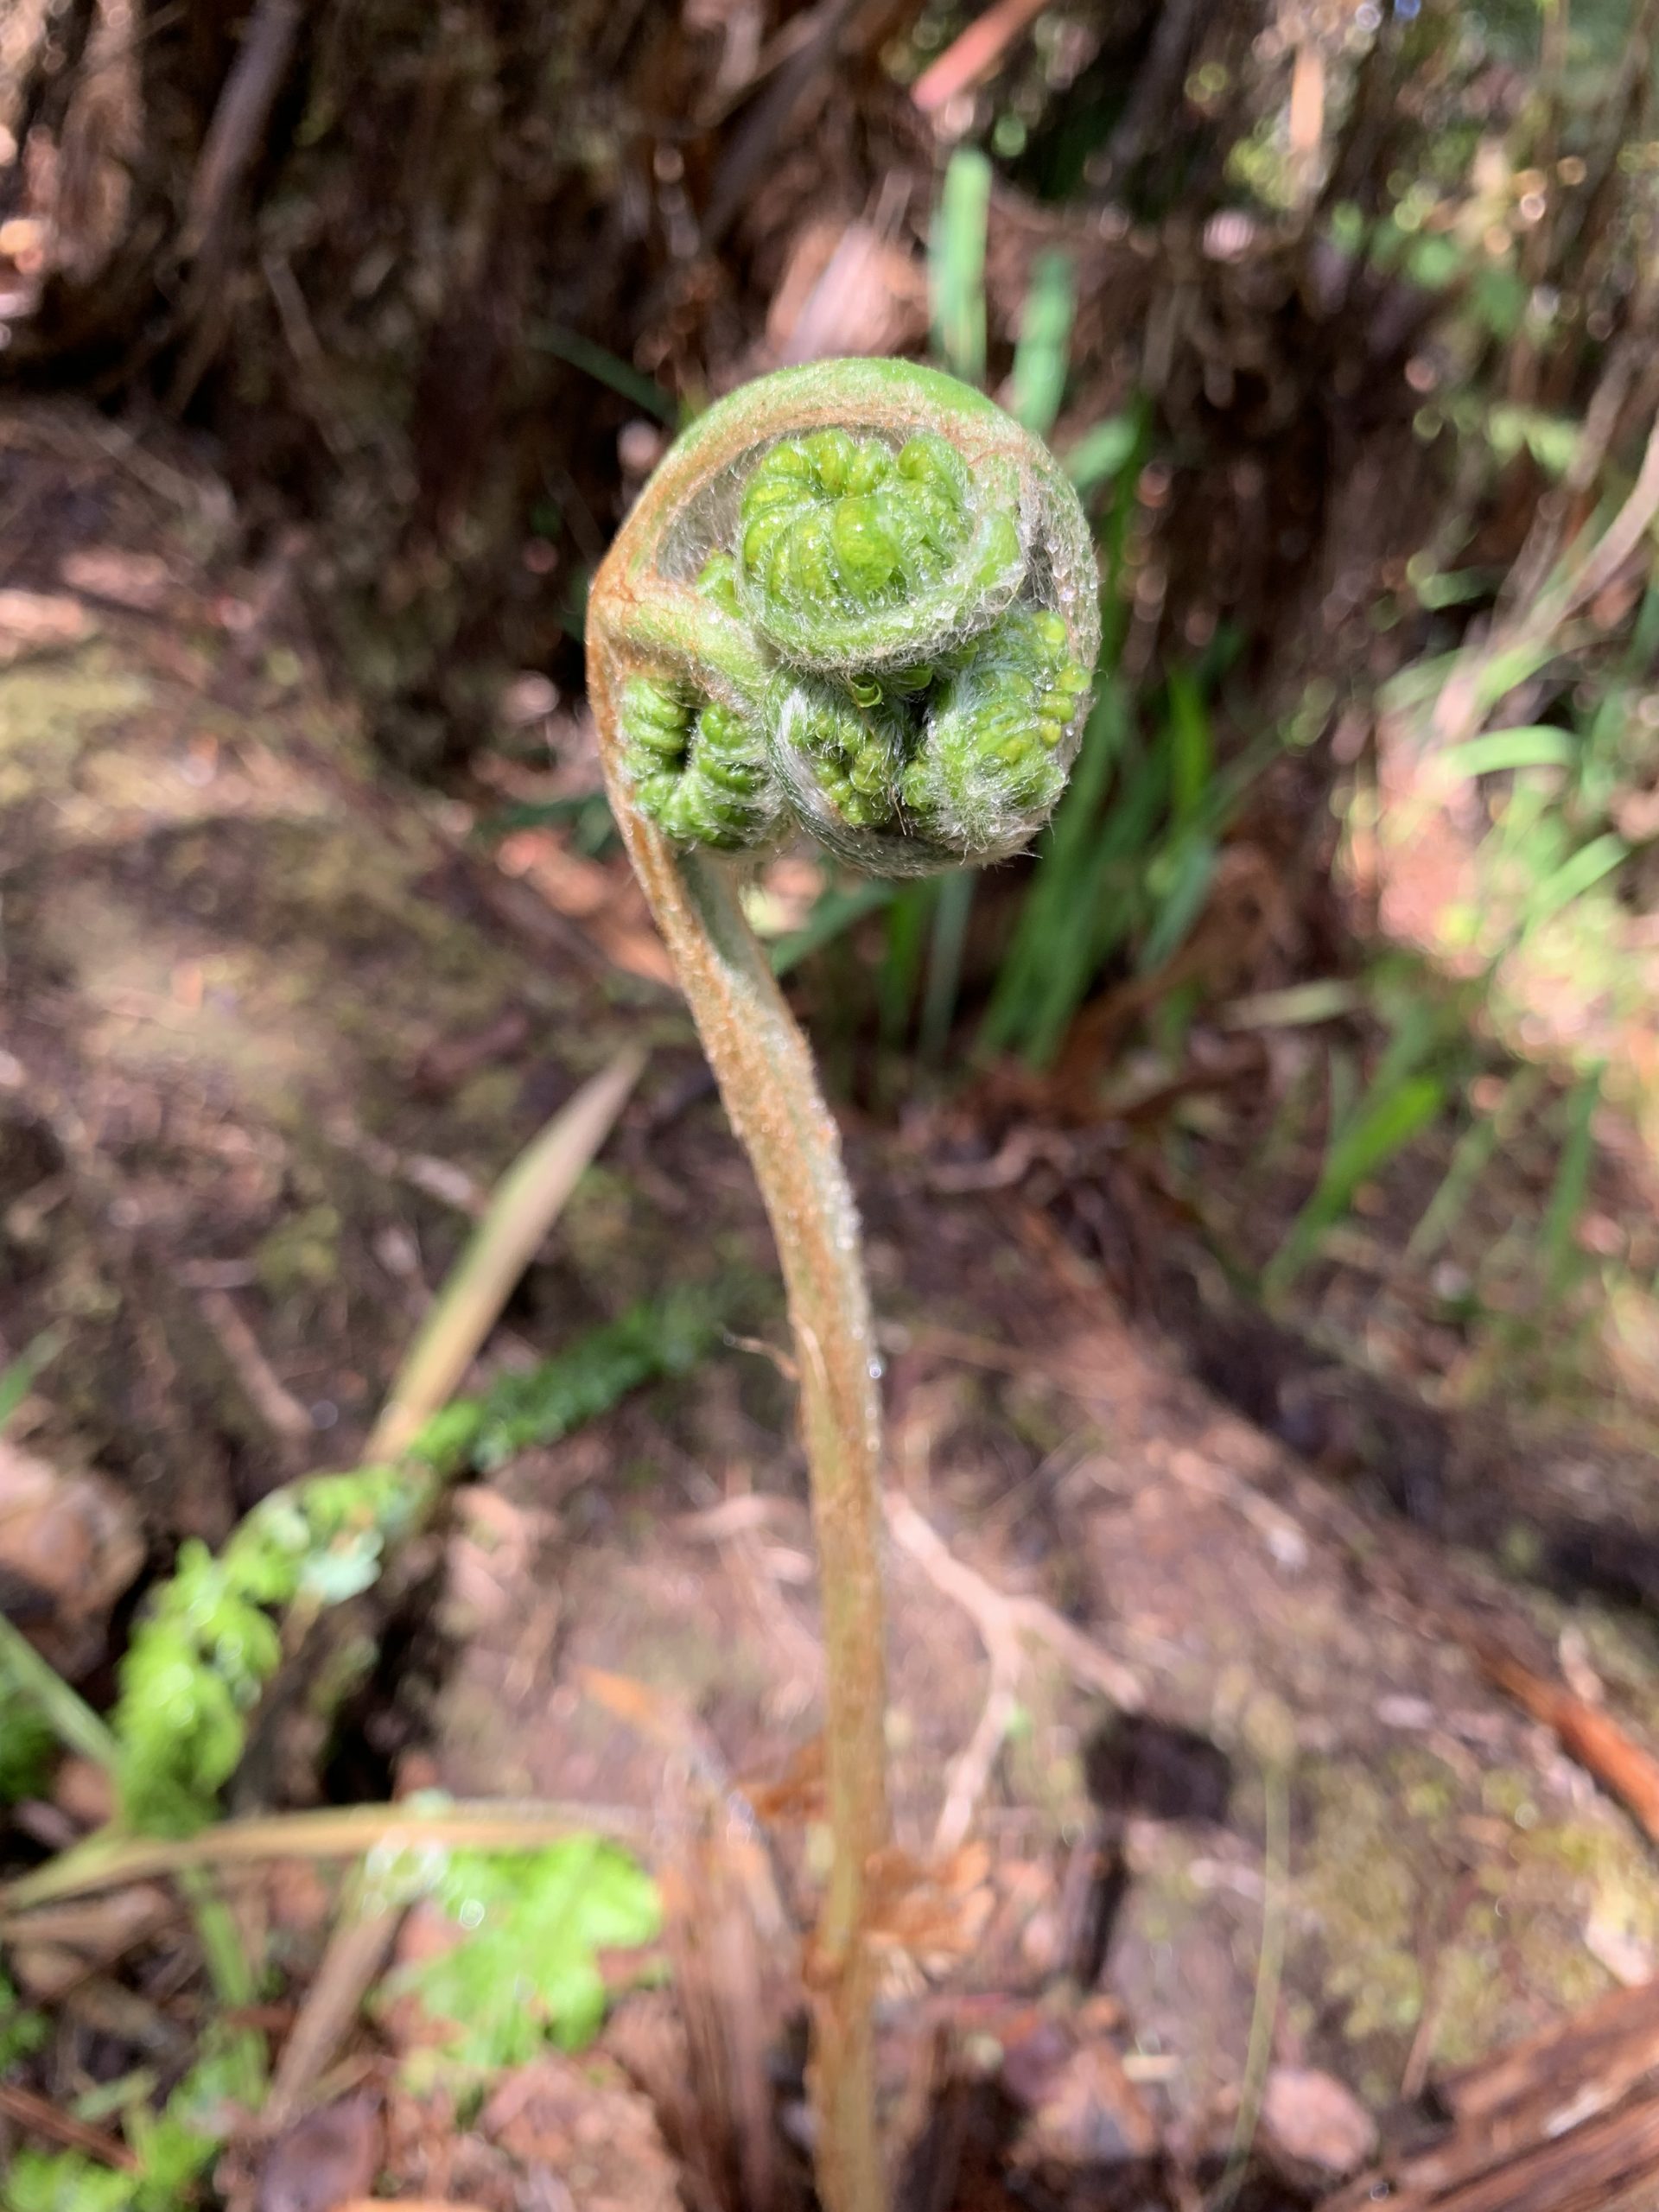 Curled up baby fern leaf